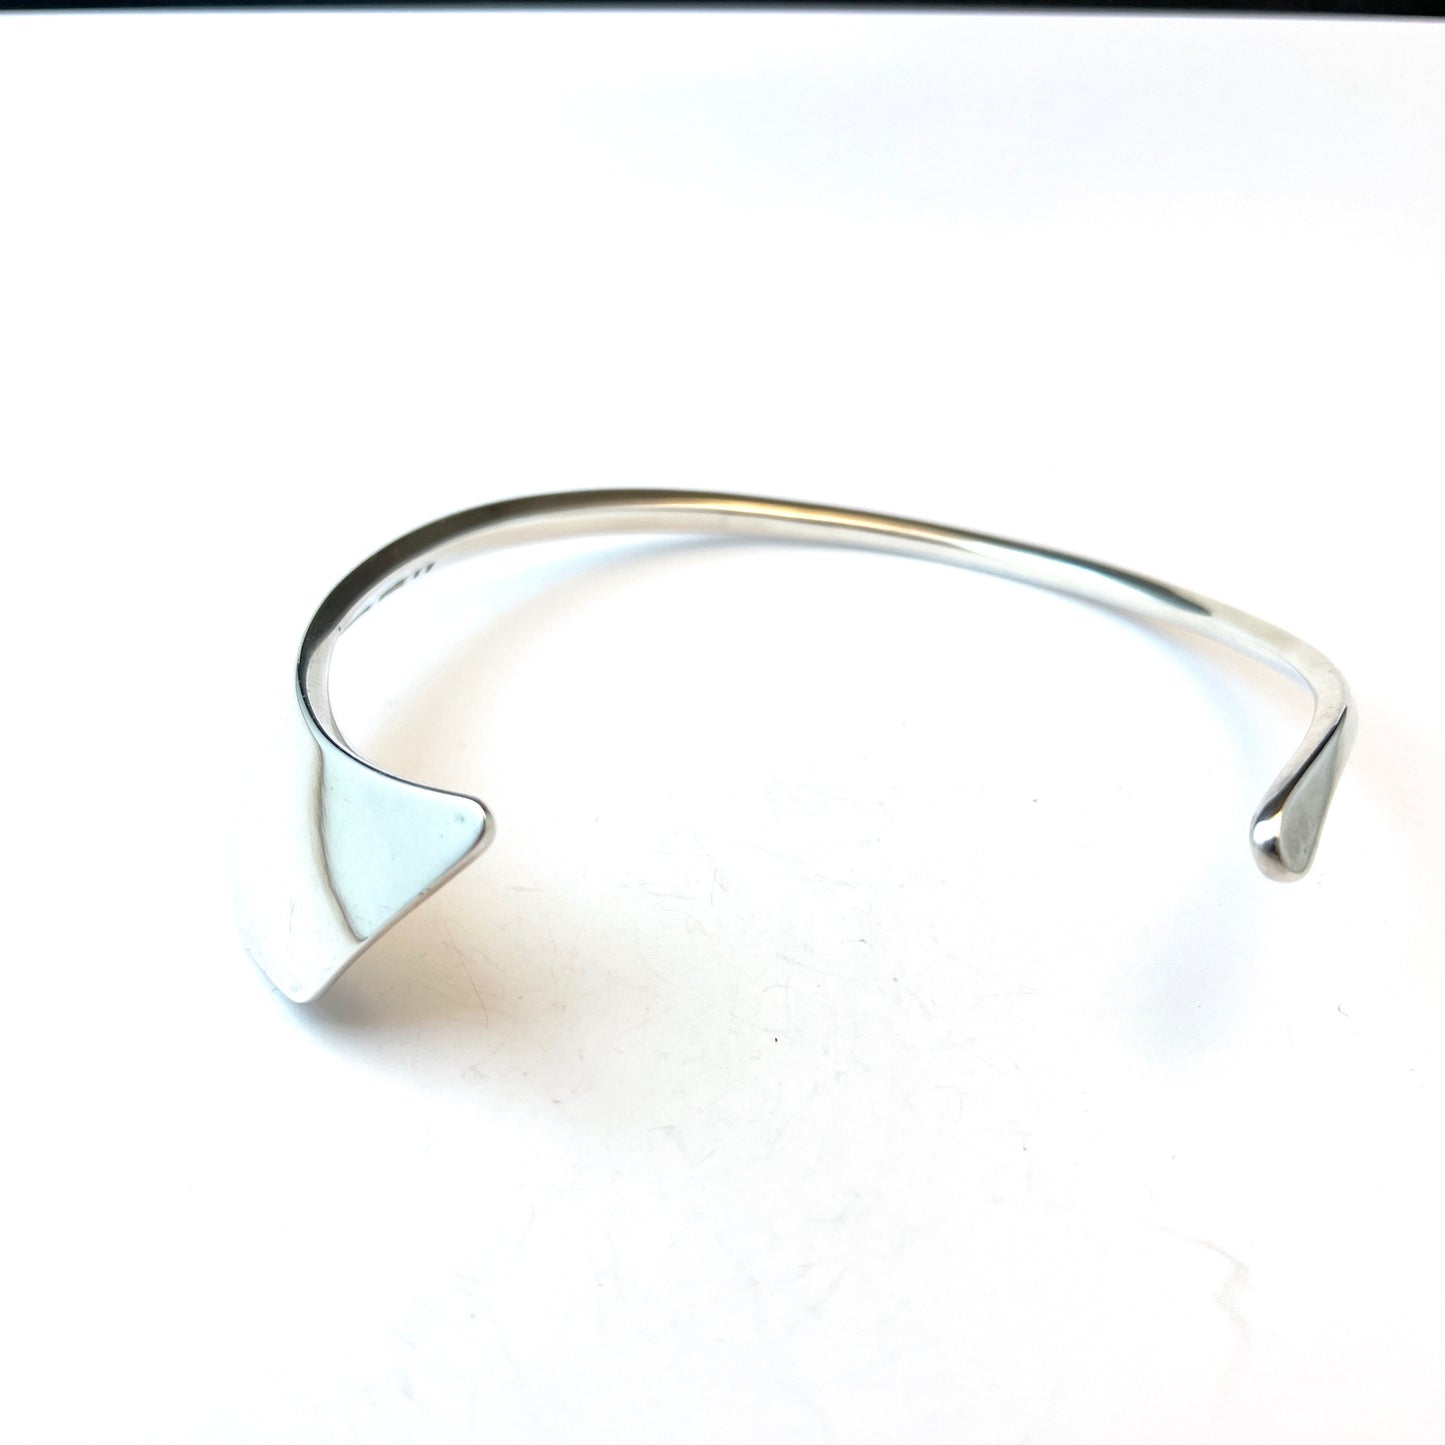 Bent Knudsen, Denmark 1950-60s. Vintage Modernist Sterling Silver Neck Ring. Design 17.